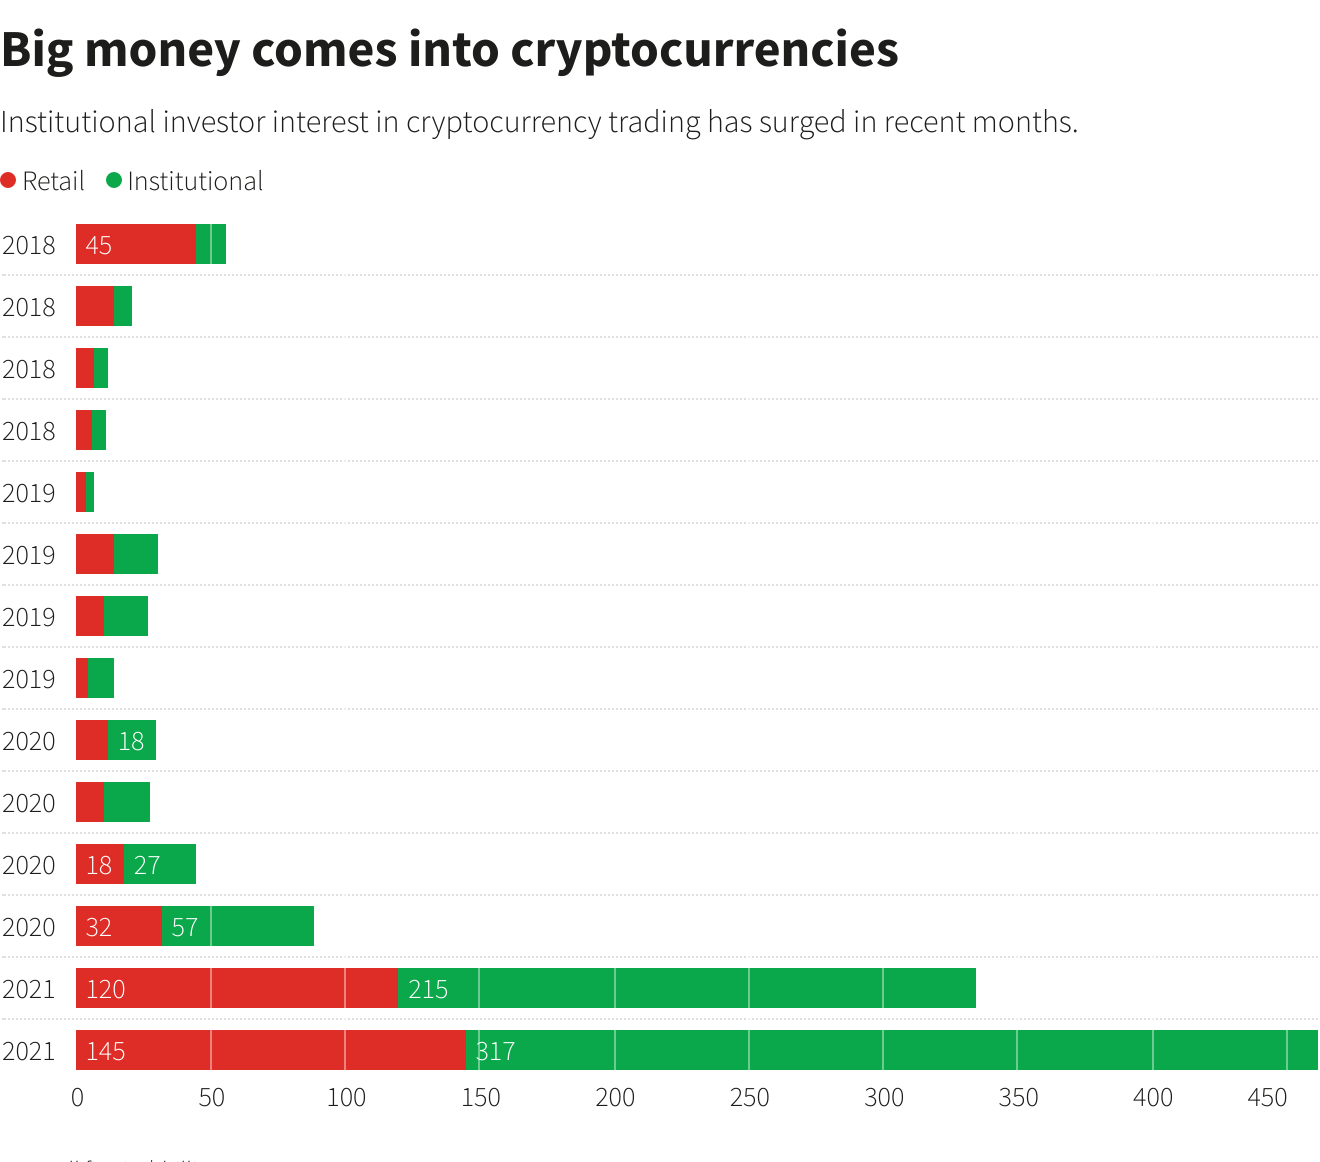 Big money comes into cryptocurrencies